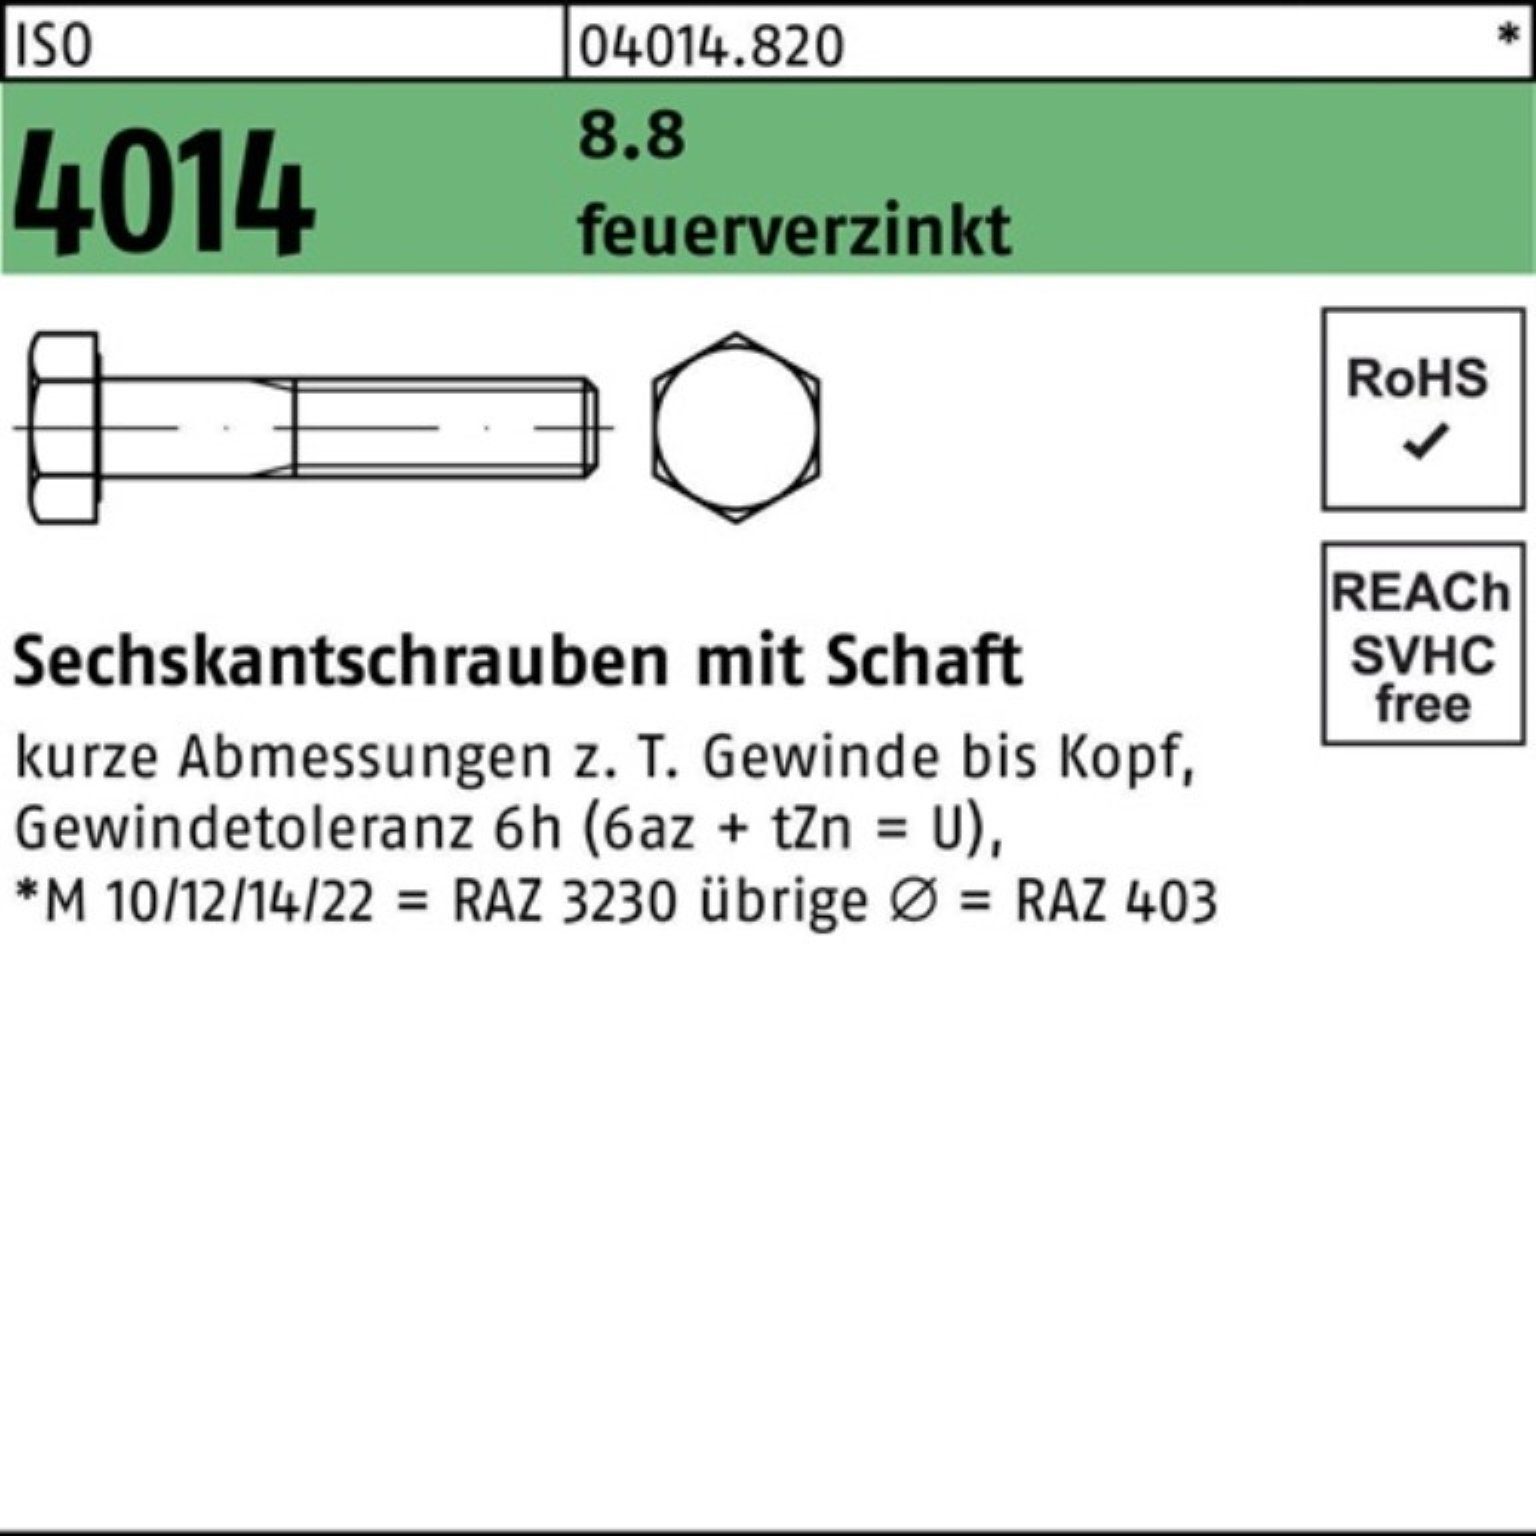 Bufab Sechskantschraube 100er Pack Sechskantschraube ISO 4014 Schaft M36x 140 8.8 feuerverz. 1